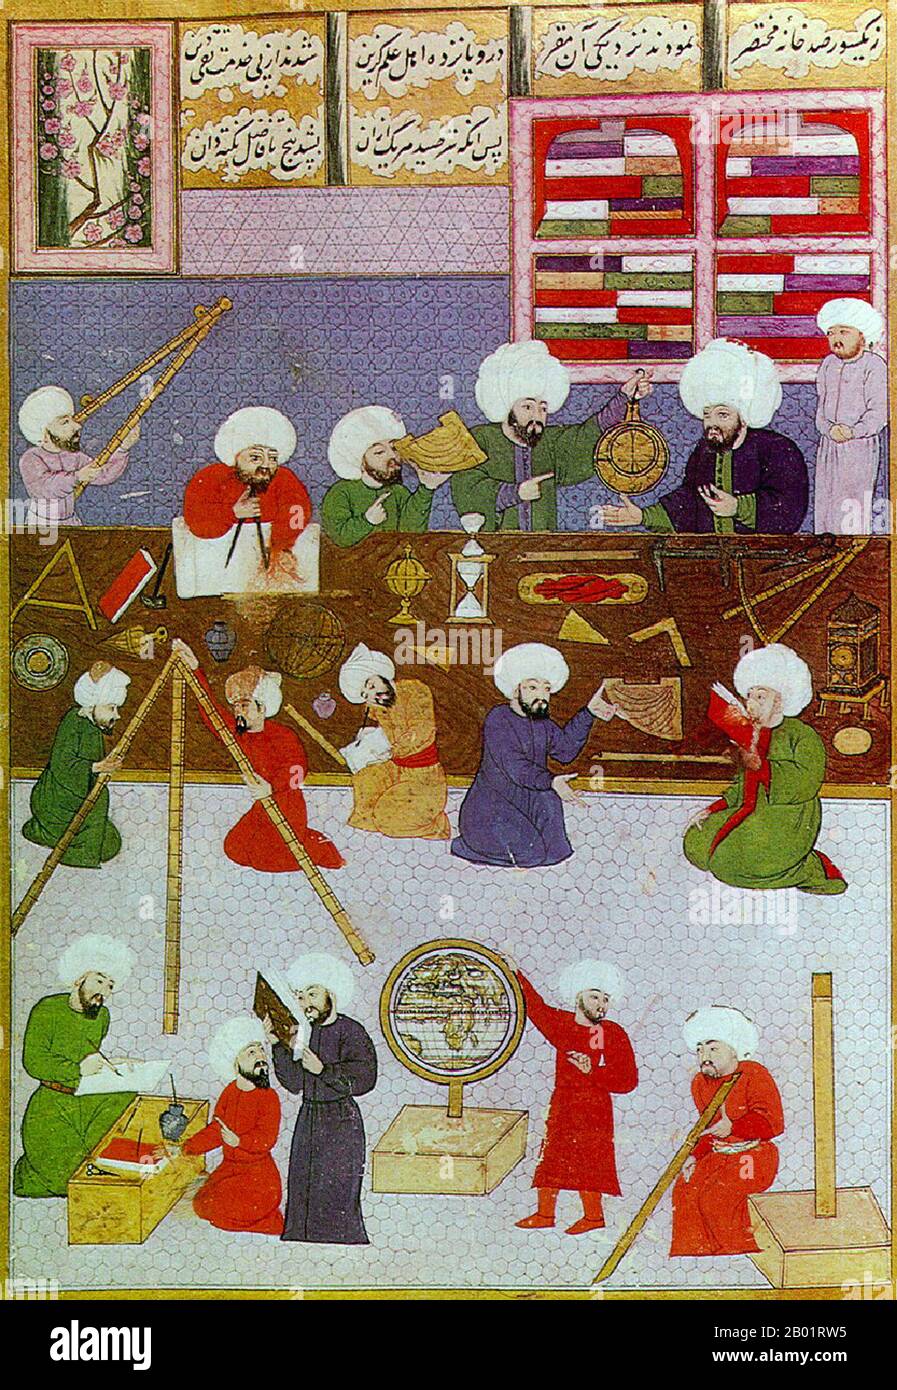 Turchia: Astronomi ottomani al lavoro intorno a Taqi al-DIN all'Osservatorio di Istanbul. Pittura in miniatura dallo Shahinshah-nama (storia del re dei re), un poema epico di 'Ala ad-DIN Mansur-Shirazi, c. 1574-1595. Taqi al-DIN Muhammad ibn Ma'ruf al-Shami al-Asadi (1526-1585) è stato un musulmano turco ottomano. È stato autore di più di 90 libri su un'ampia varietà di argomenti, tra cui astronomia, orologi, ingegneria, matematica, meccanica, ottica e filosofia naturale. Foto Stock